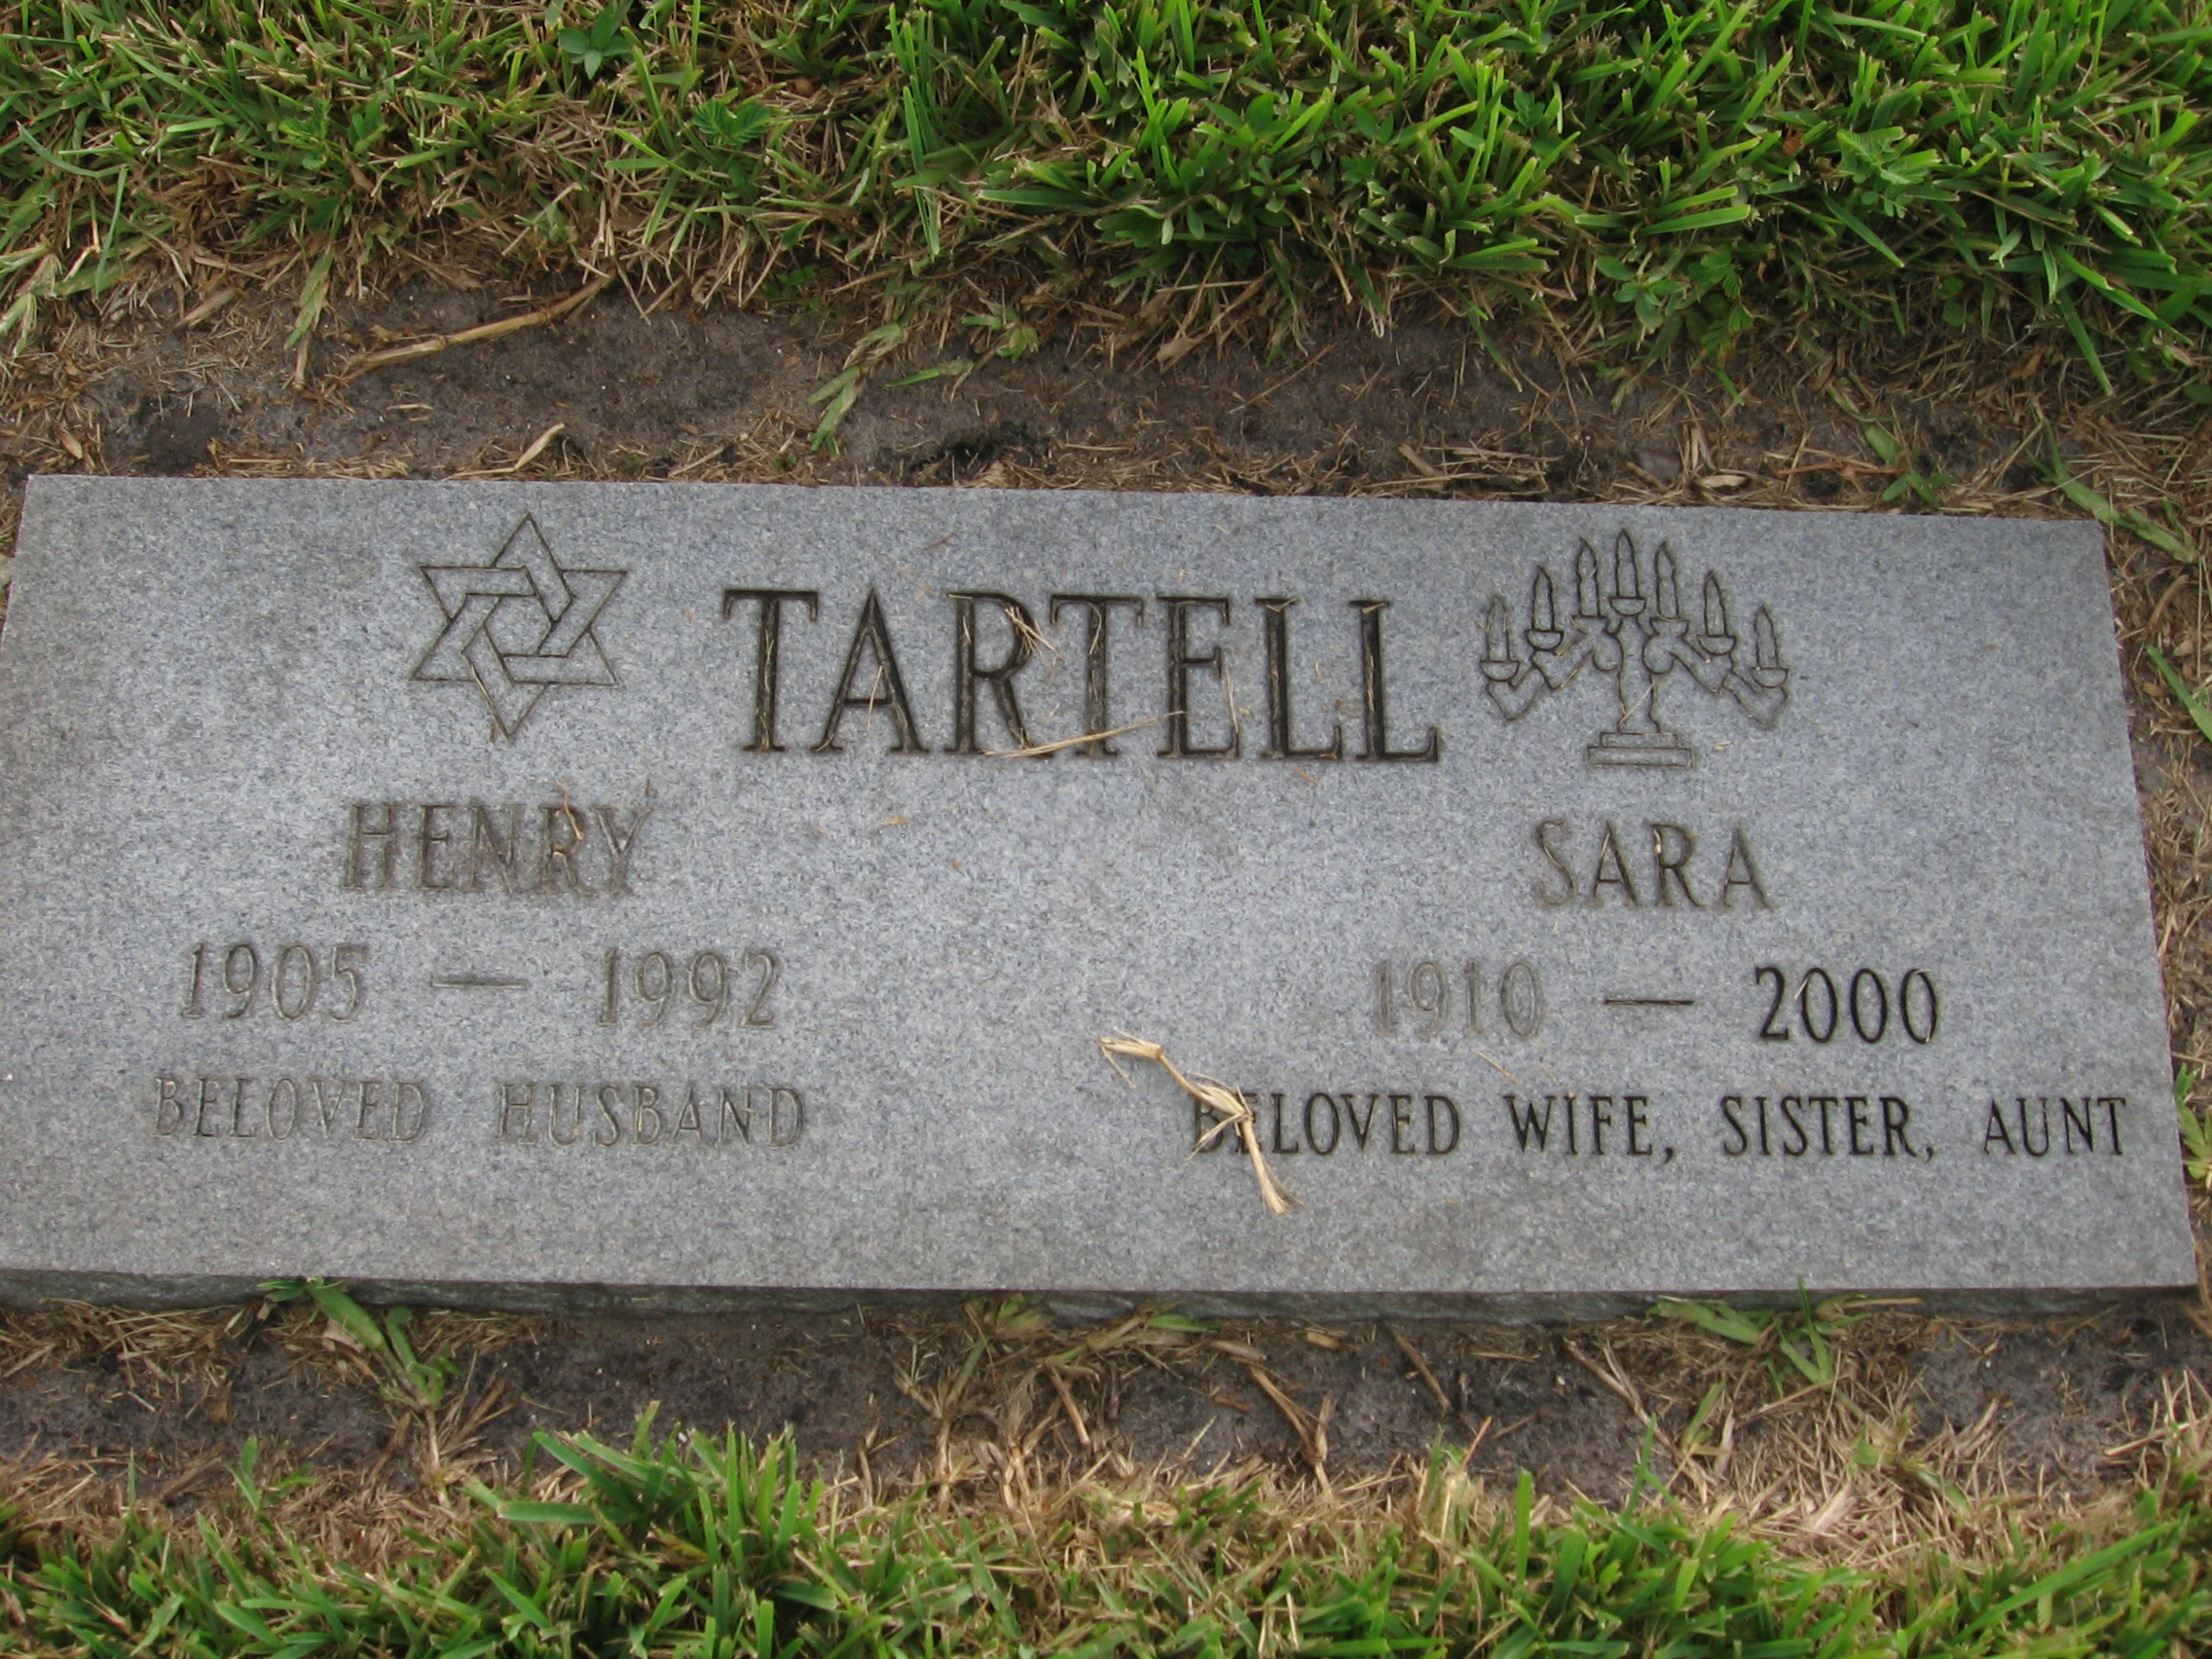 Henry Tartell